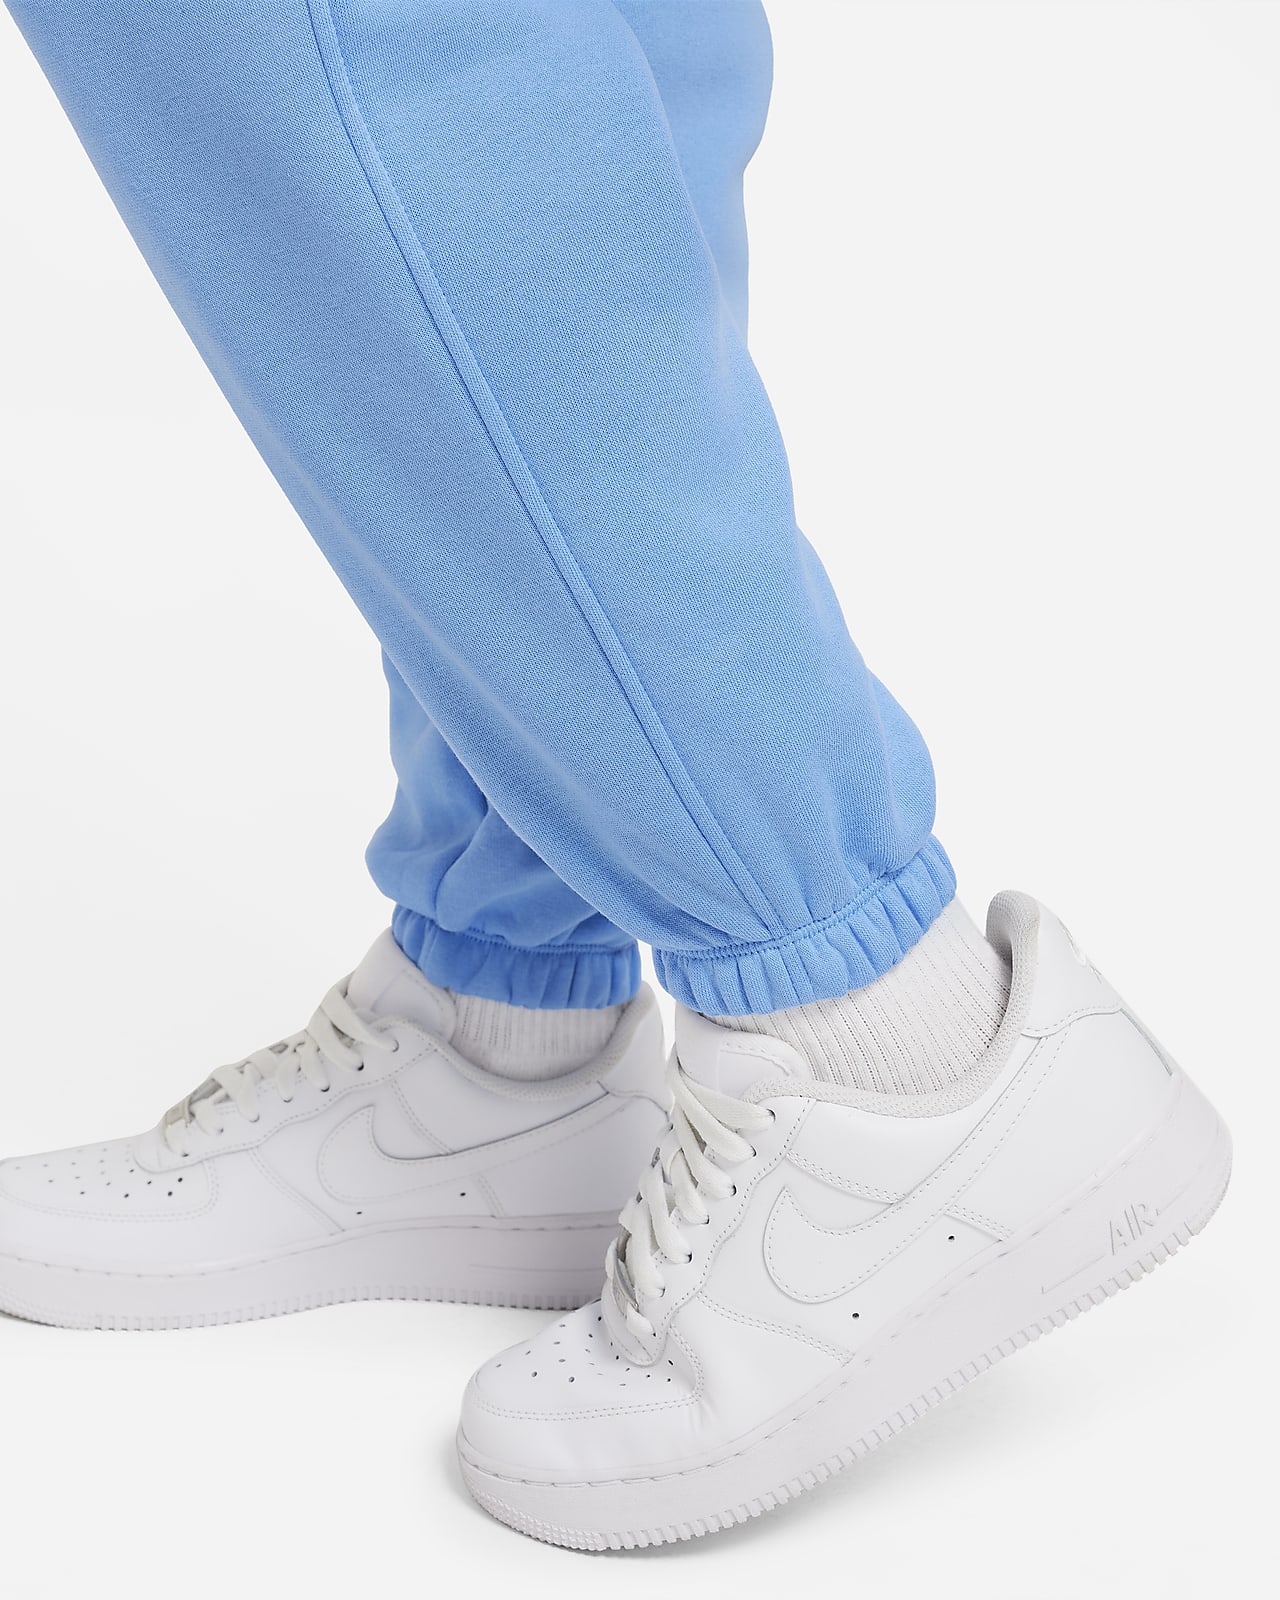 Nike Sportswear Club Fleece Pants. Big (Girls\') Kids